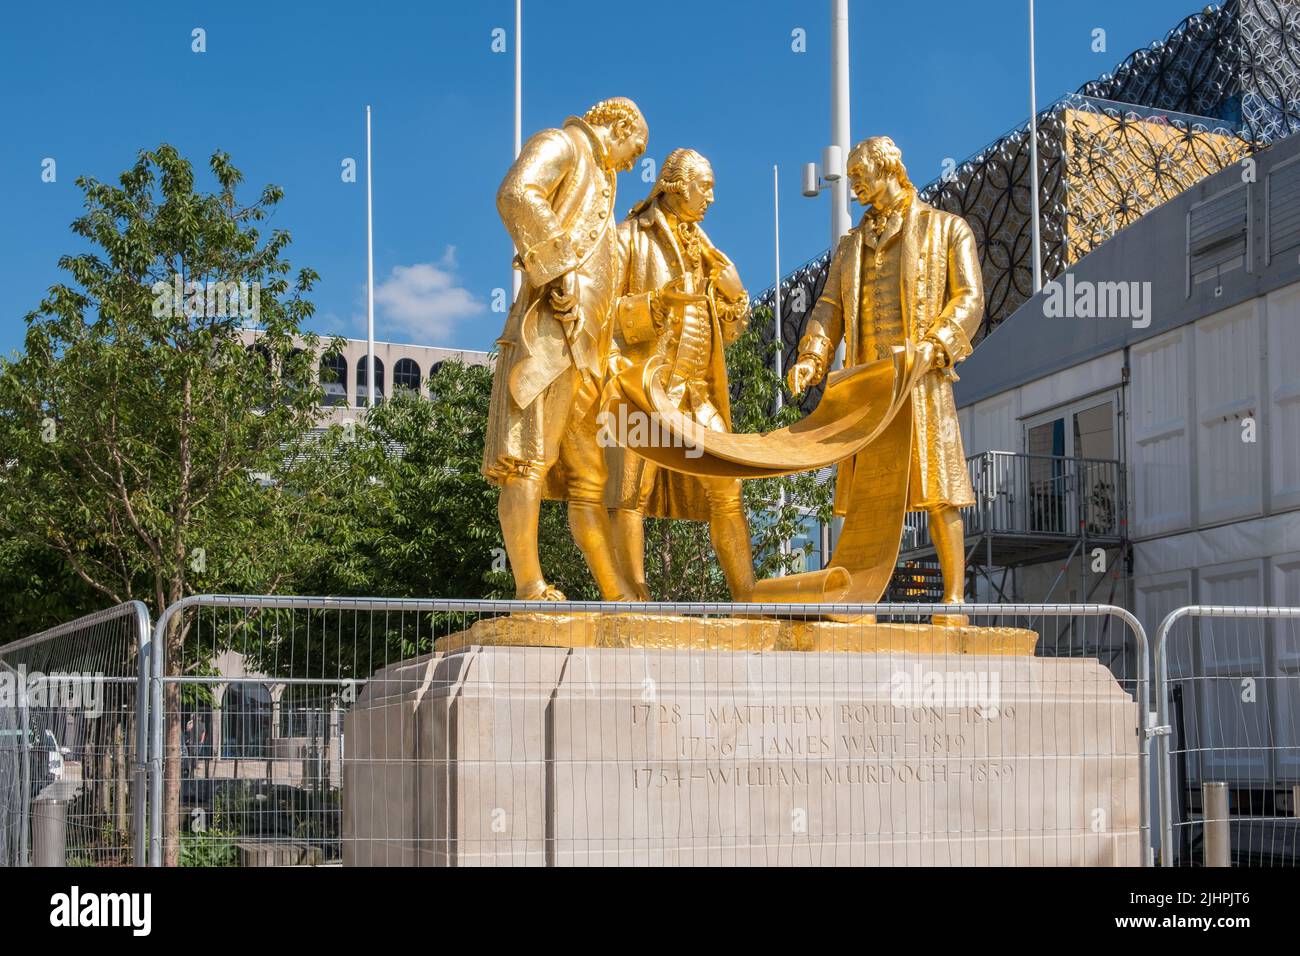 'The Golden Boys' Una estatua guiada de Matthew Boulton, William Murdoch y James Watt por William Bloye en Centenary Square, Birmingham Foto de stock